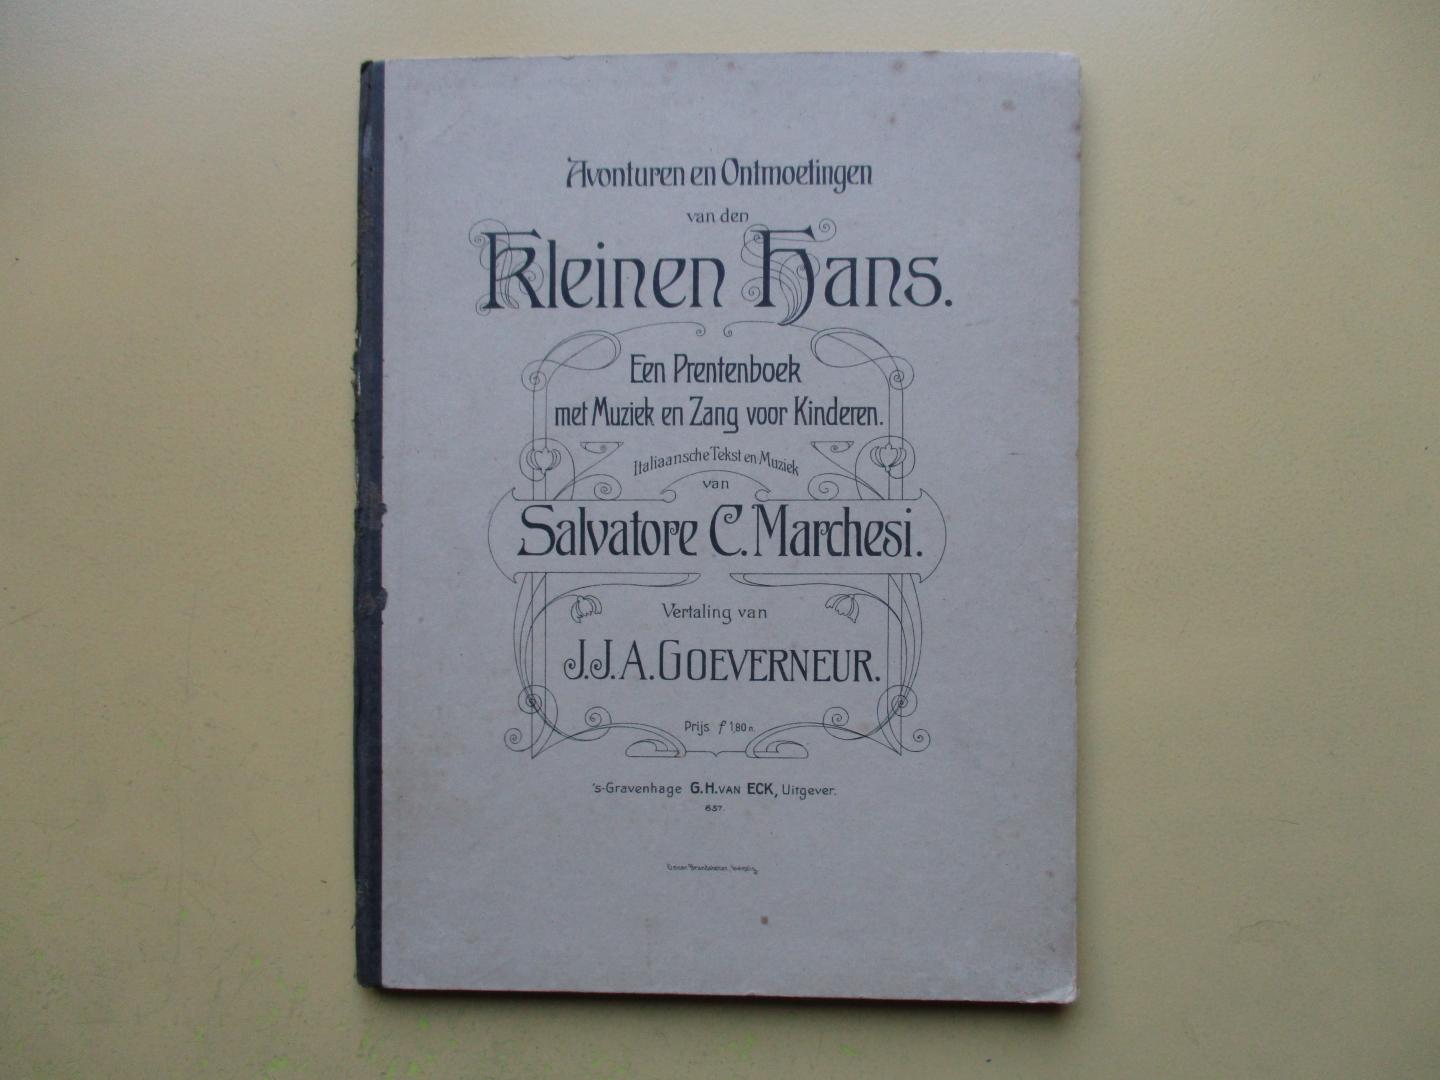 Marchesi,  Salvatore C. /  vertaling van Goeverneur, J.J. A. - Avonturen en ontmoetingen van den Kleinen Hans